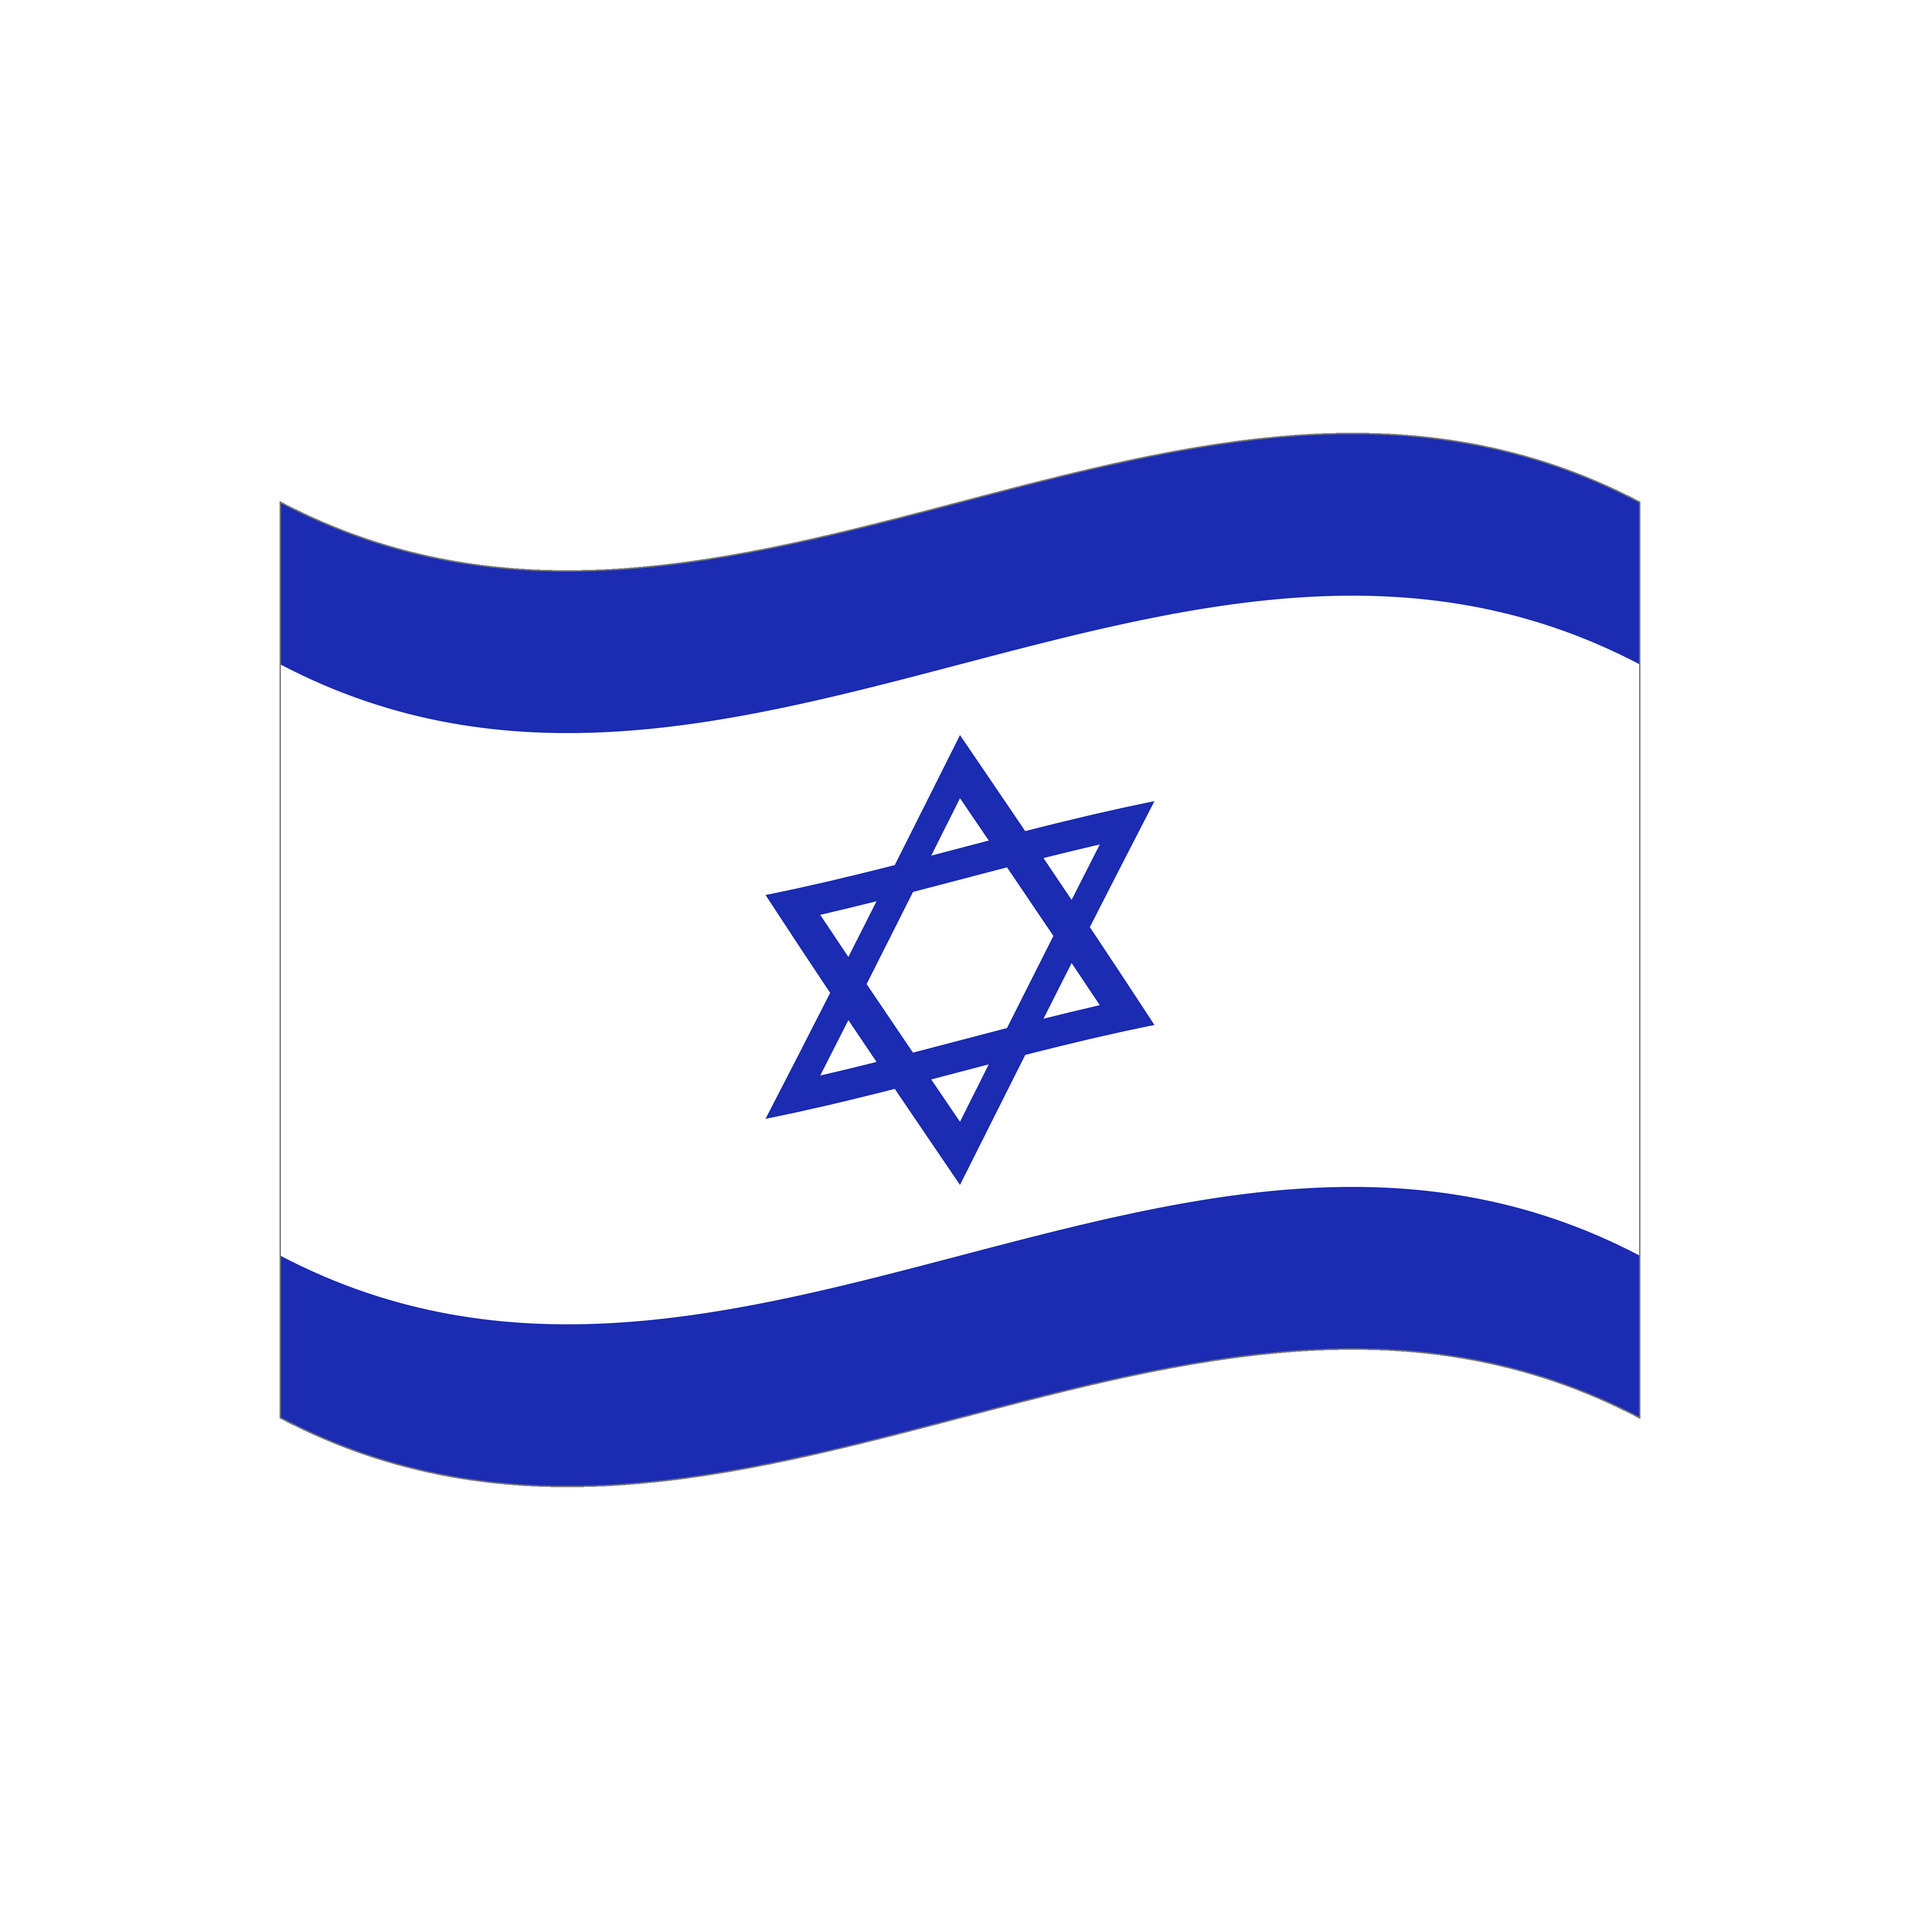 https://static.vecteezy.com/ti/gratis-vektor/p3/26531168-flattern-israelisch-flagge-flagge-von-israel-vektor.jpg